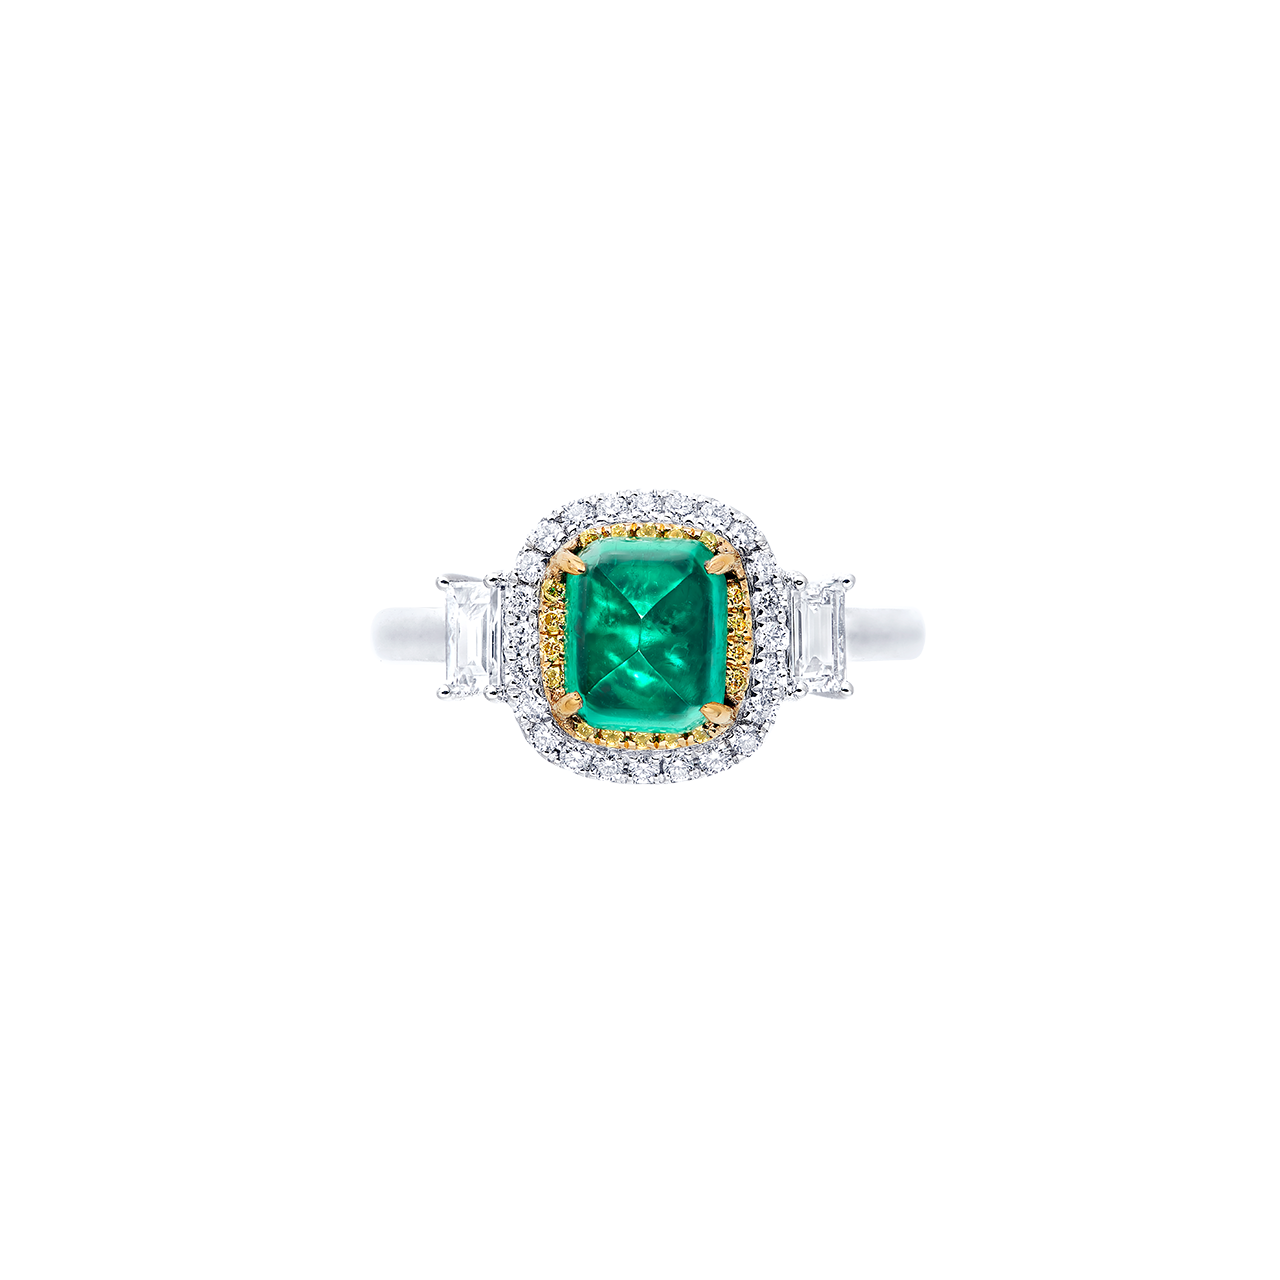 1.27克拉 祖母綠鑽戒
Emerald and Diamond Ring